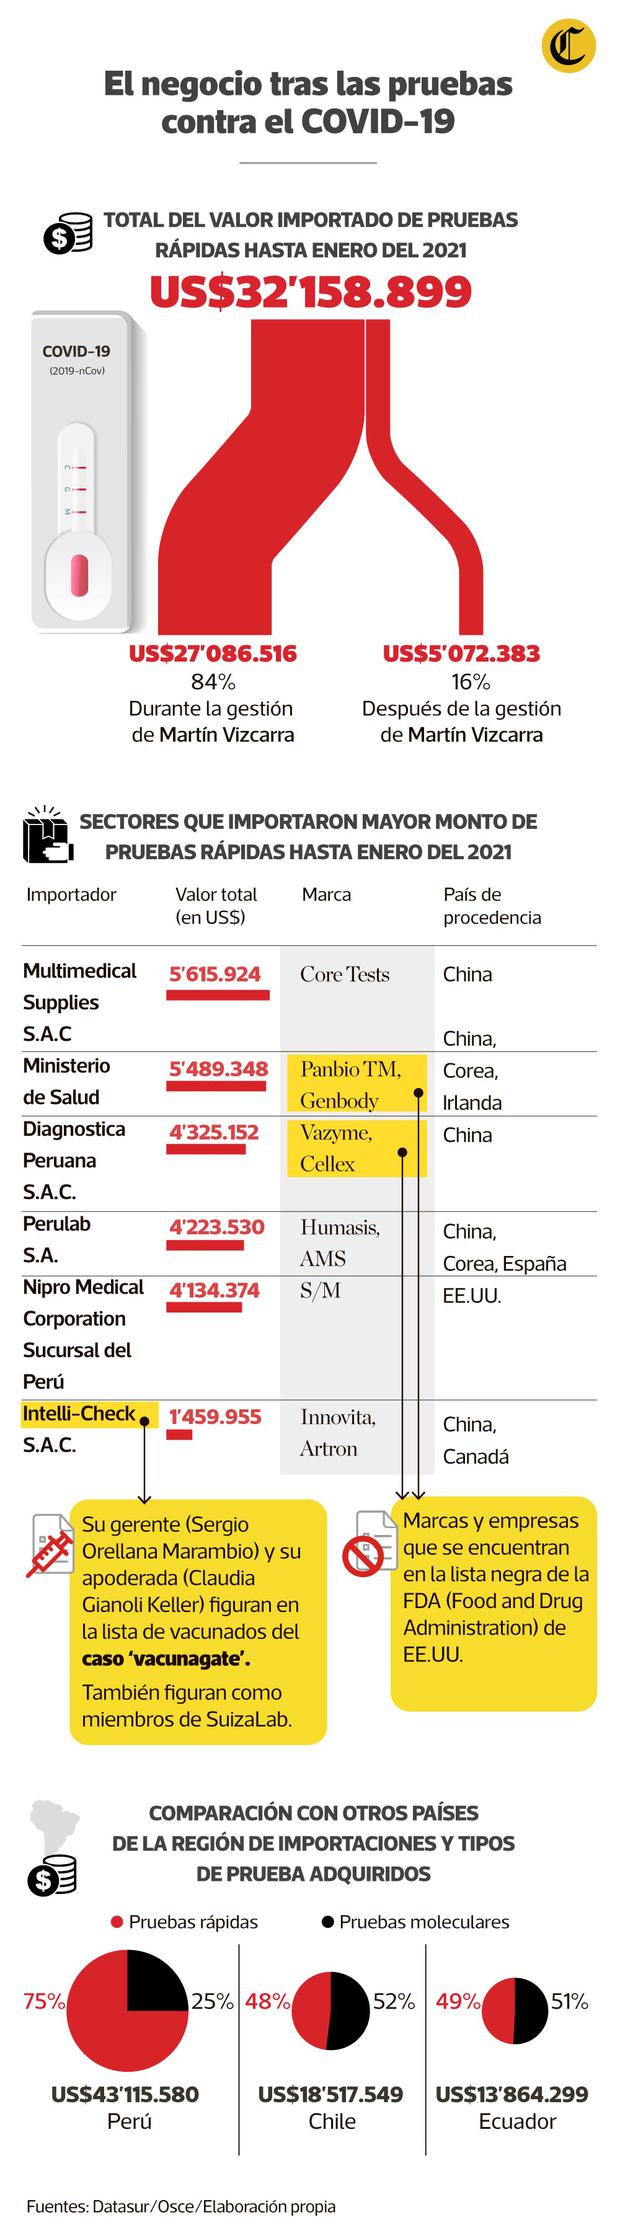 El valor de las importaciones de pruebas rápidas fue de 32 millones de dólares, que corresponde al 75% de todas las pruebas importadas durante la pandemia. A comparación de países como Chile y Ecuador somos los que más pruebas rápidas importaron.